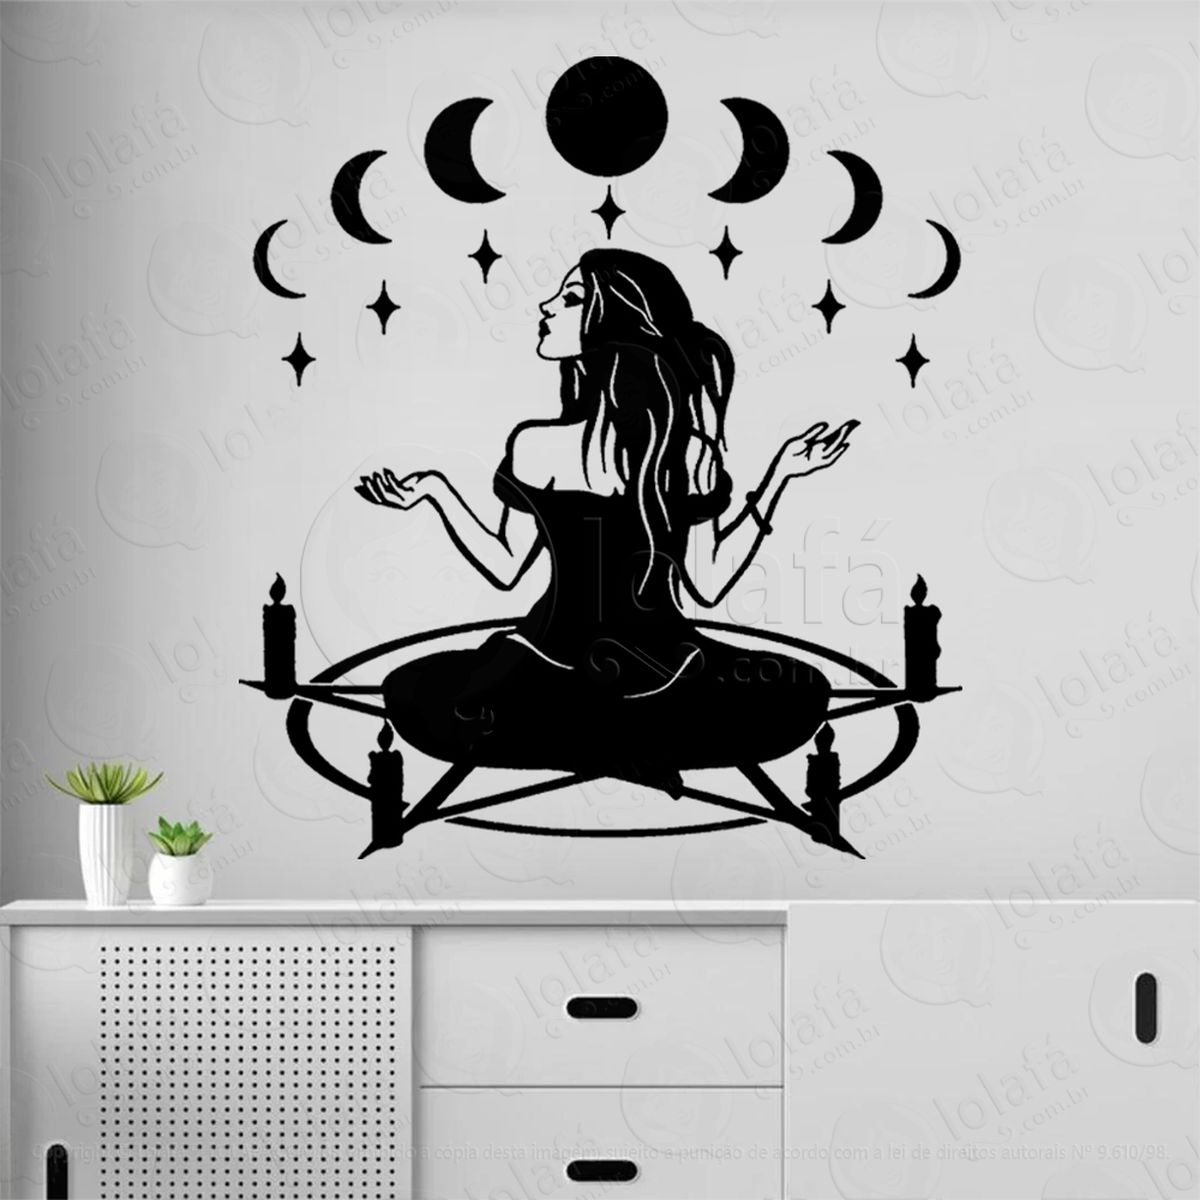 ritual wicca pentagrama fases lunar adesivo de parede decorativo para casa, sala, quarto, vidro e altar ocultista - mod:320